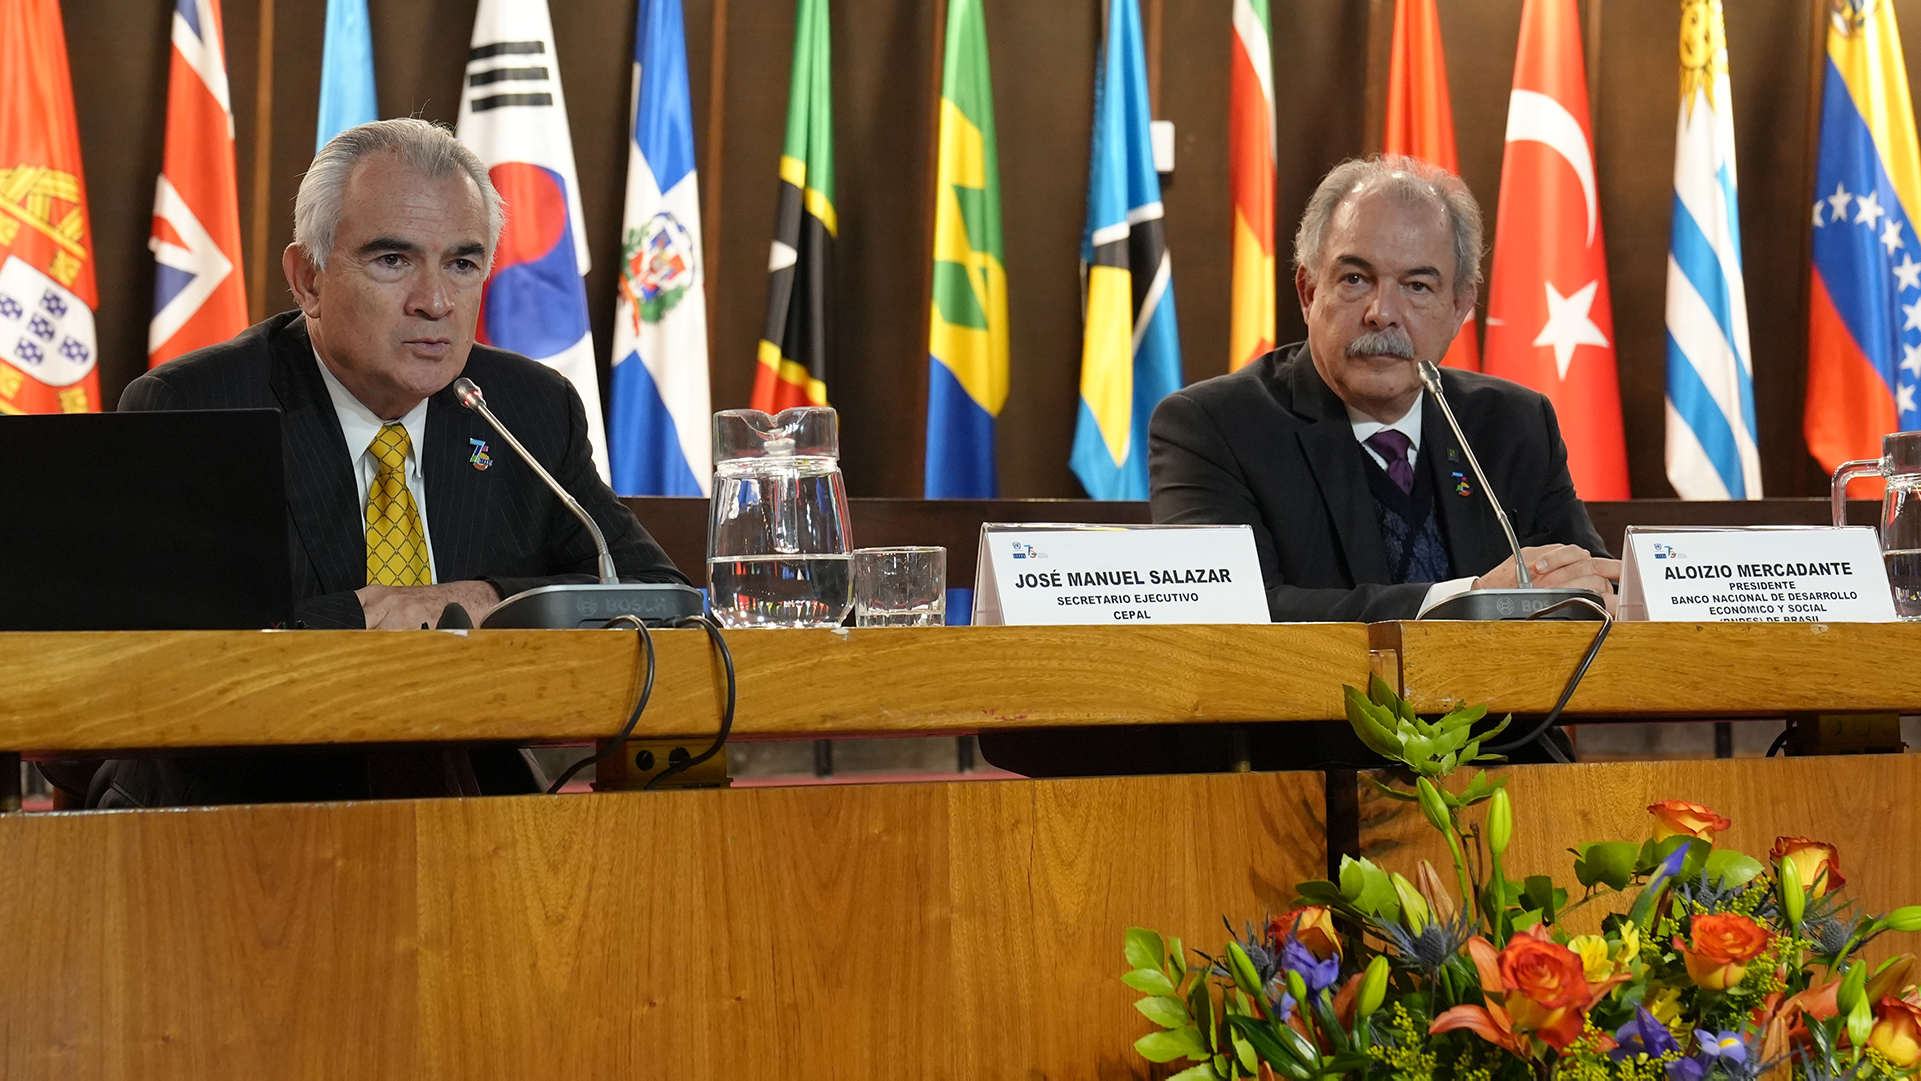 BNDES en la CEPAL: América Latina y el Caribe debe reimpulsar la integración regional poniendo el foco en la transición ecológica